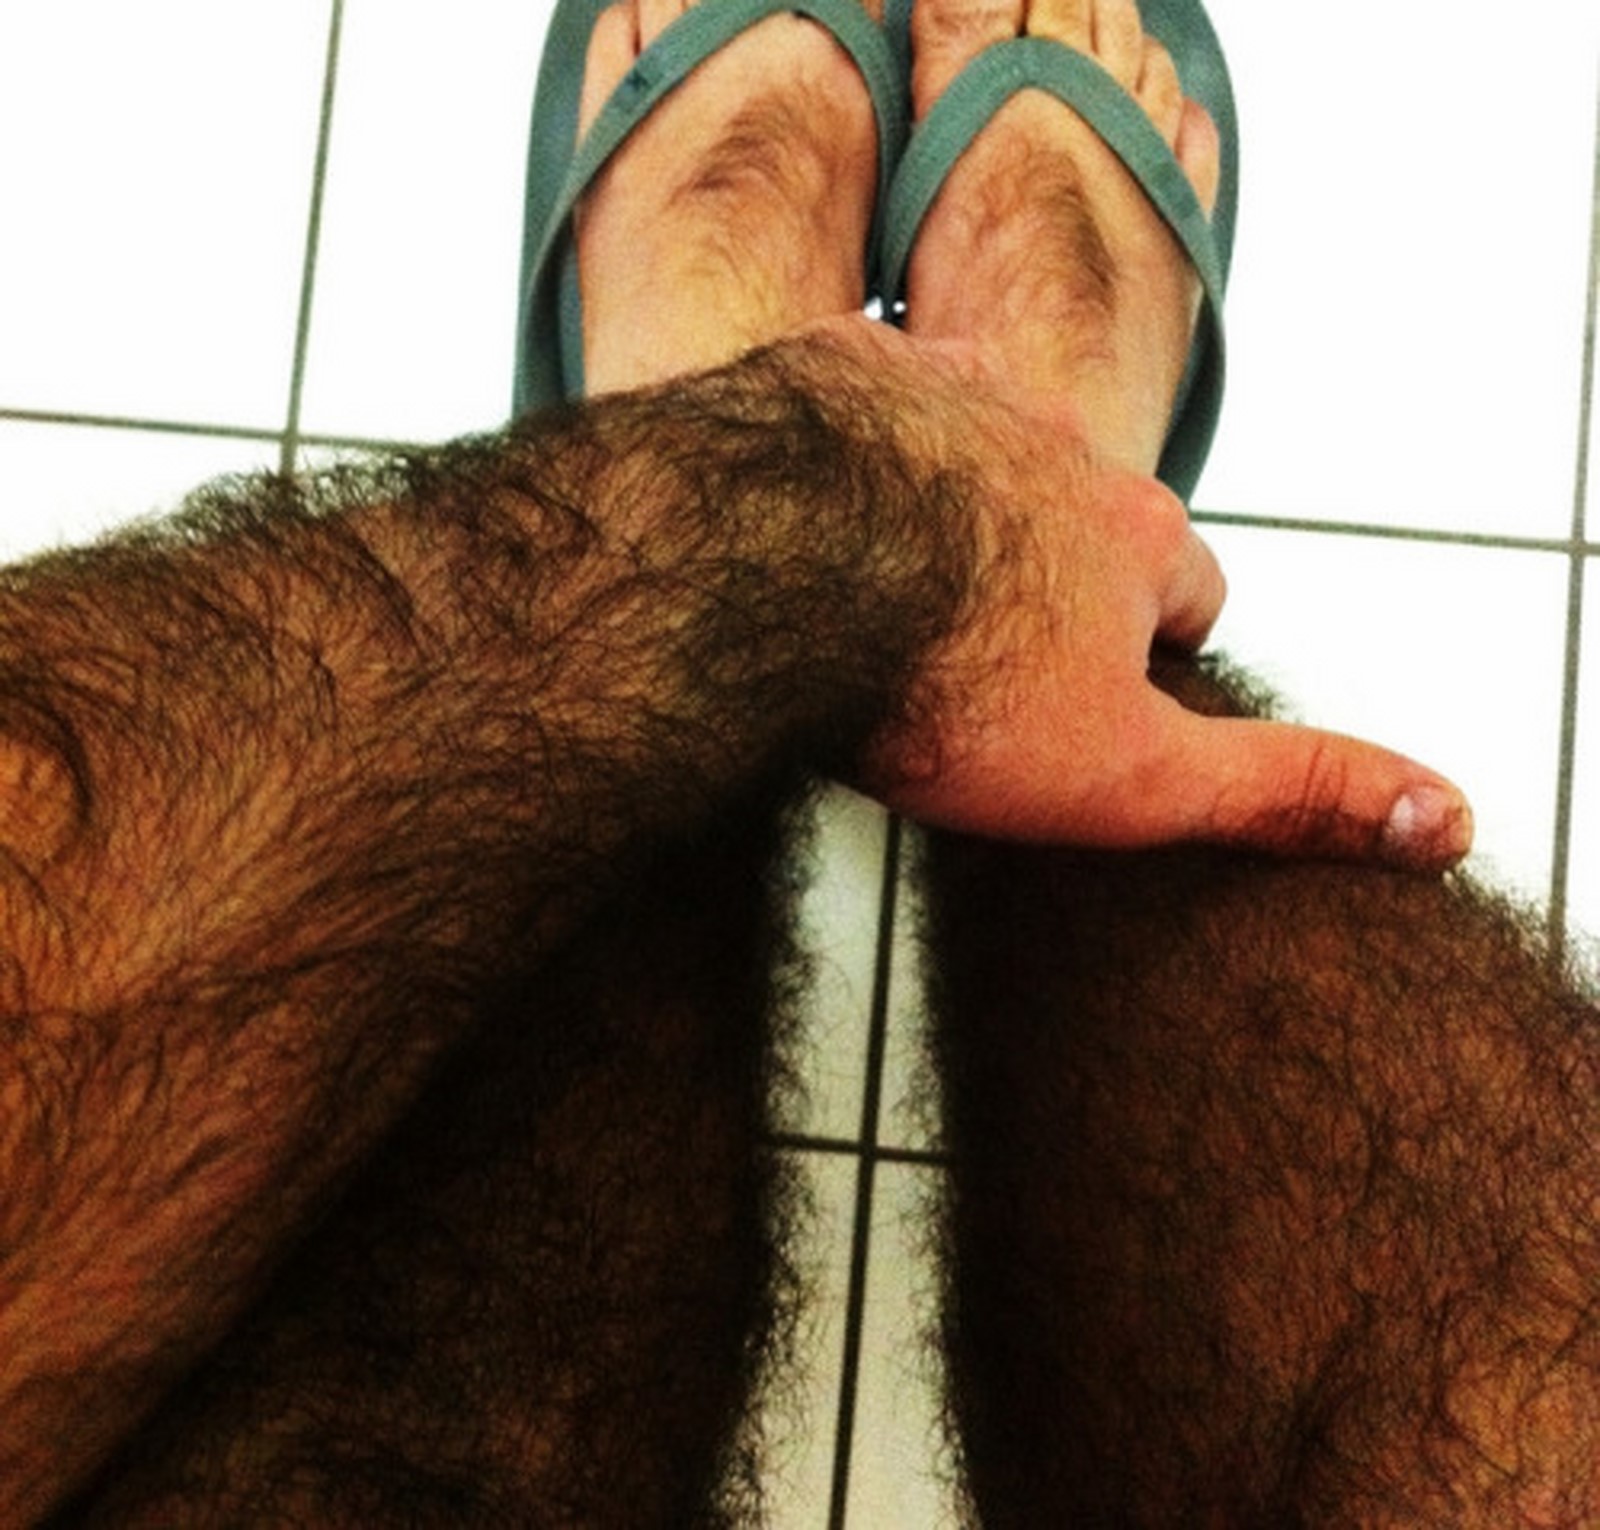 Порно Волосатые Ноги Чулках